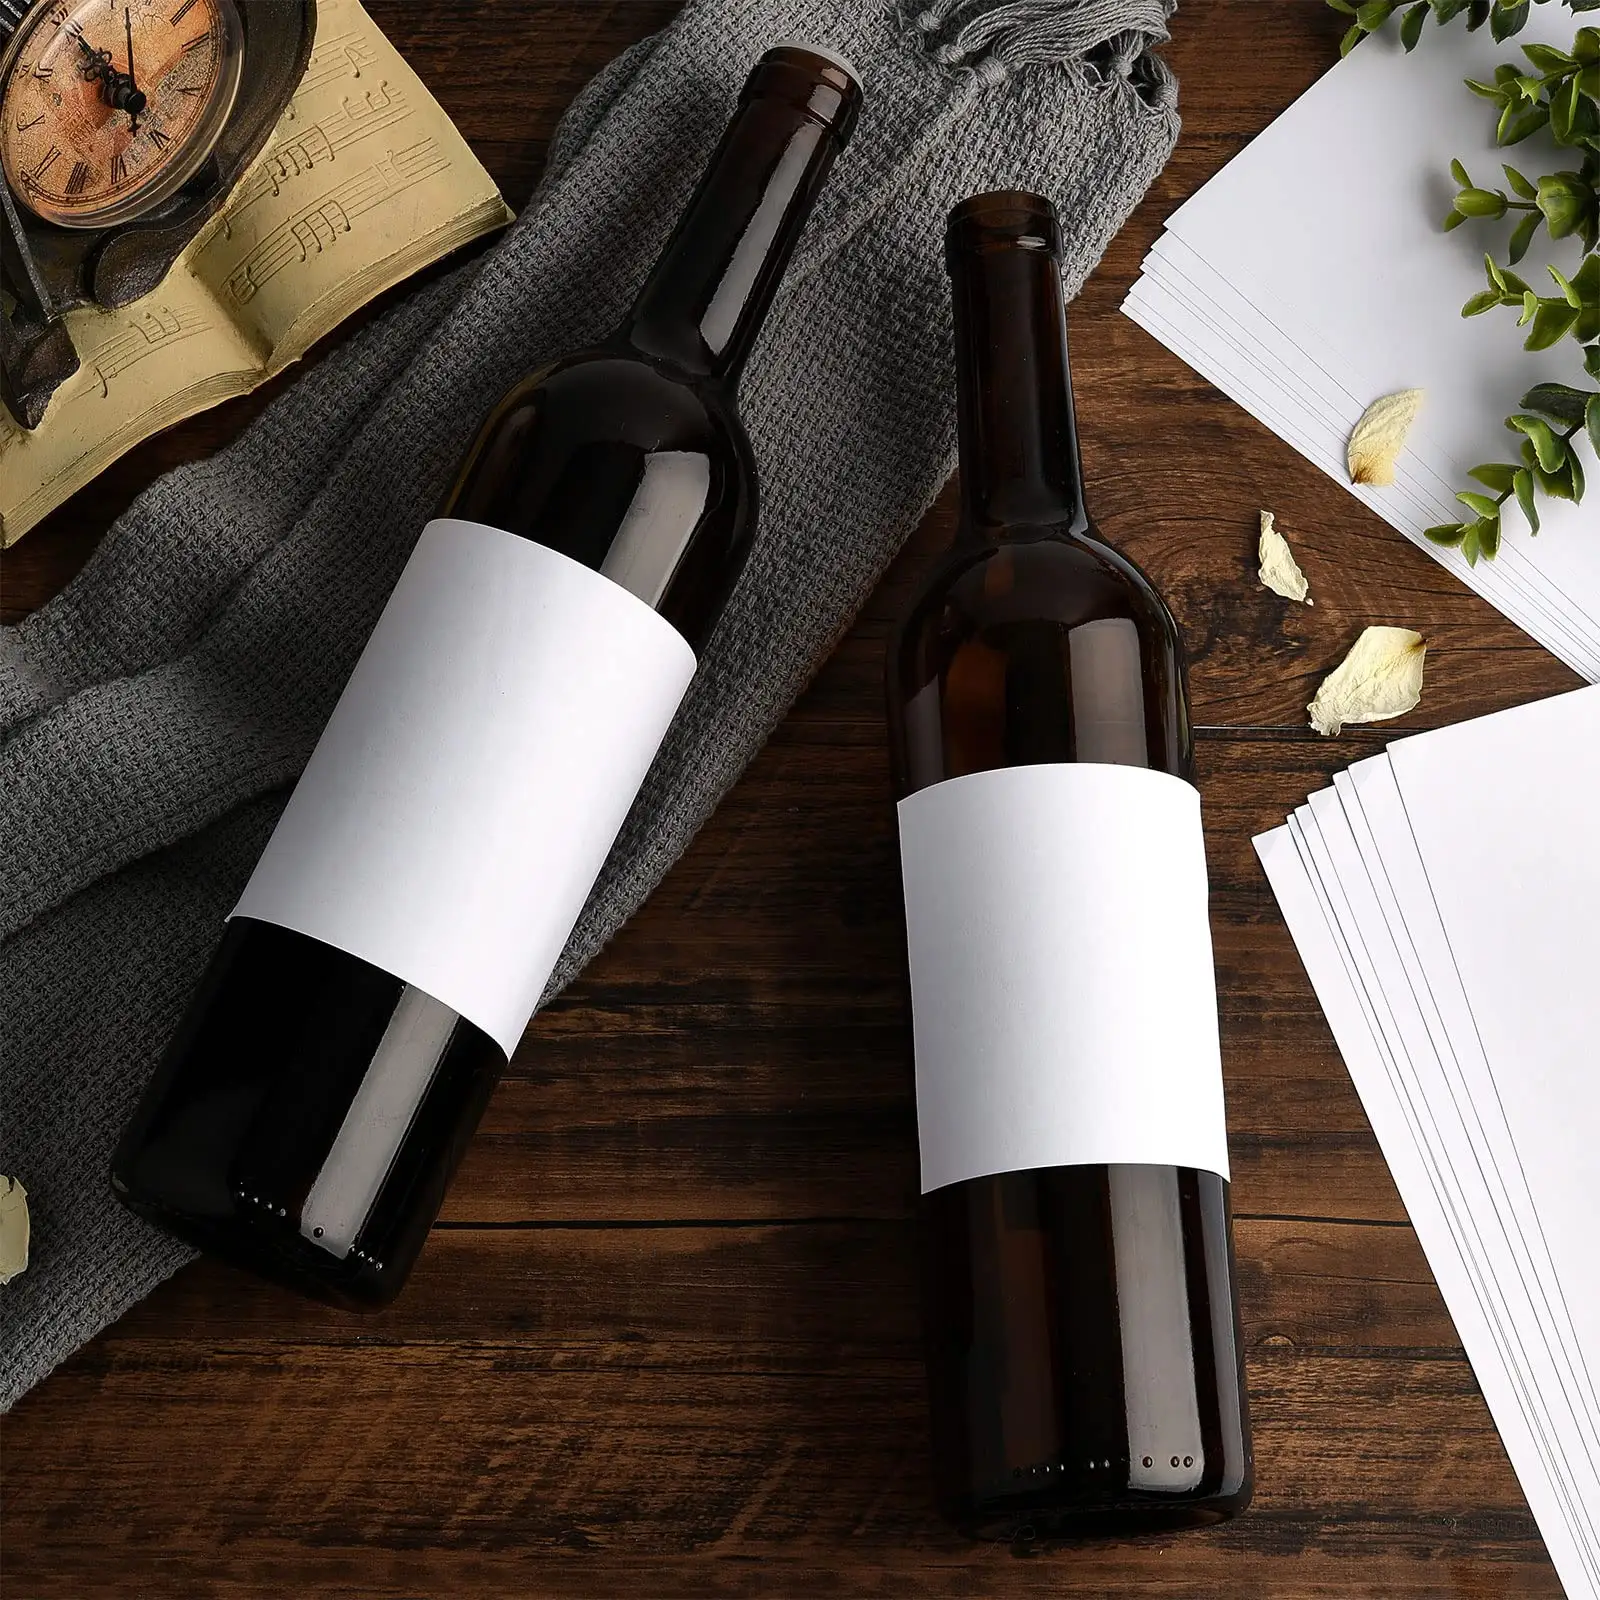 Impression de grand logo rouleau personnalisé vernis brillant biodégradable autocollant papier canettes de bière bouteilles étiquettes auto-adhésives